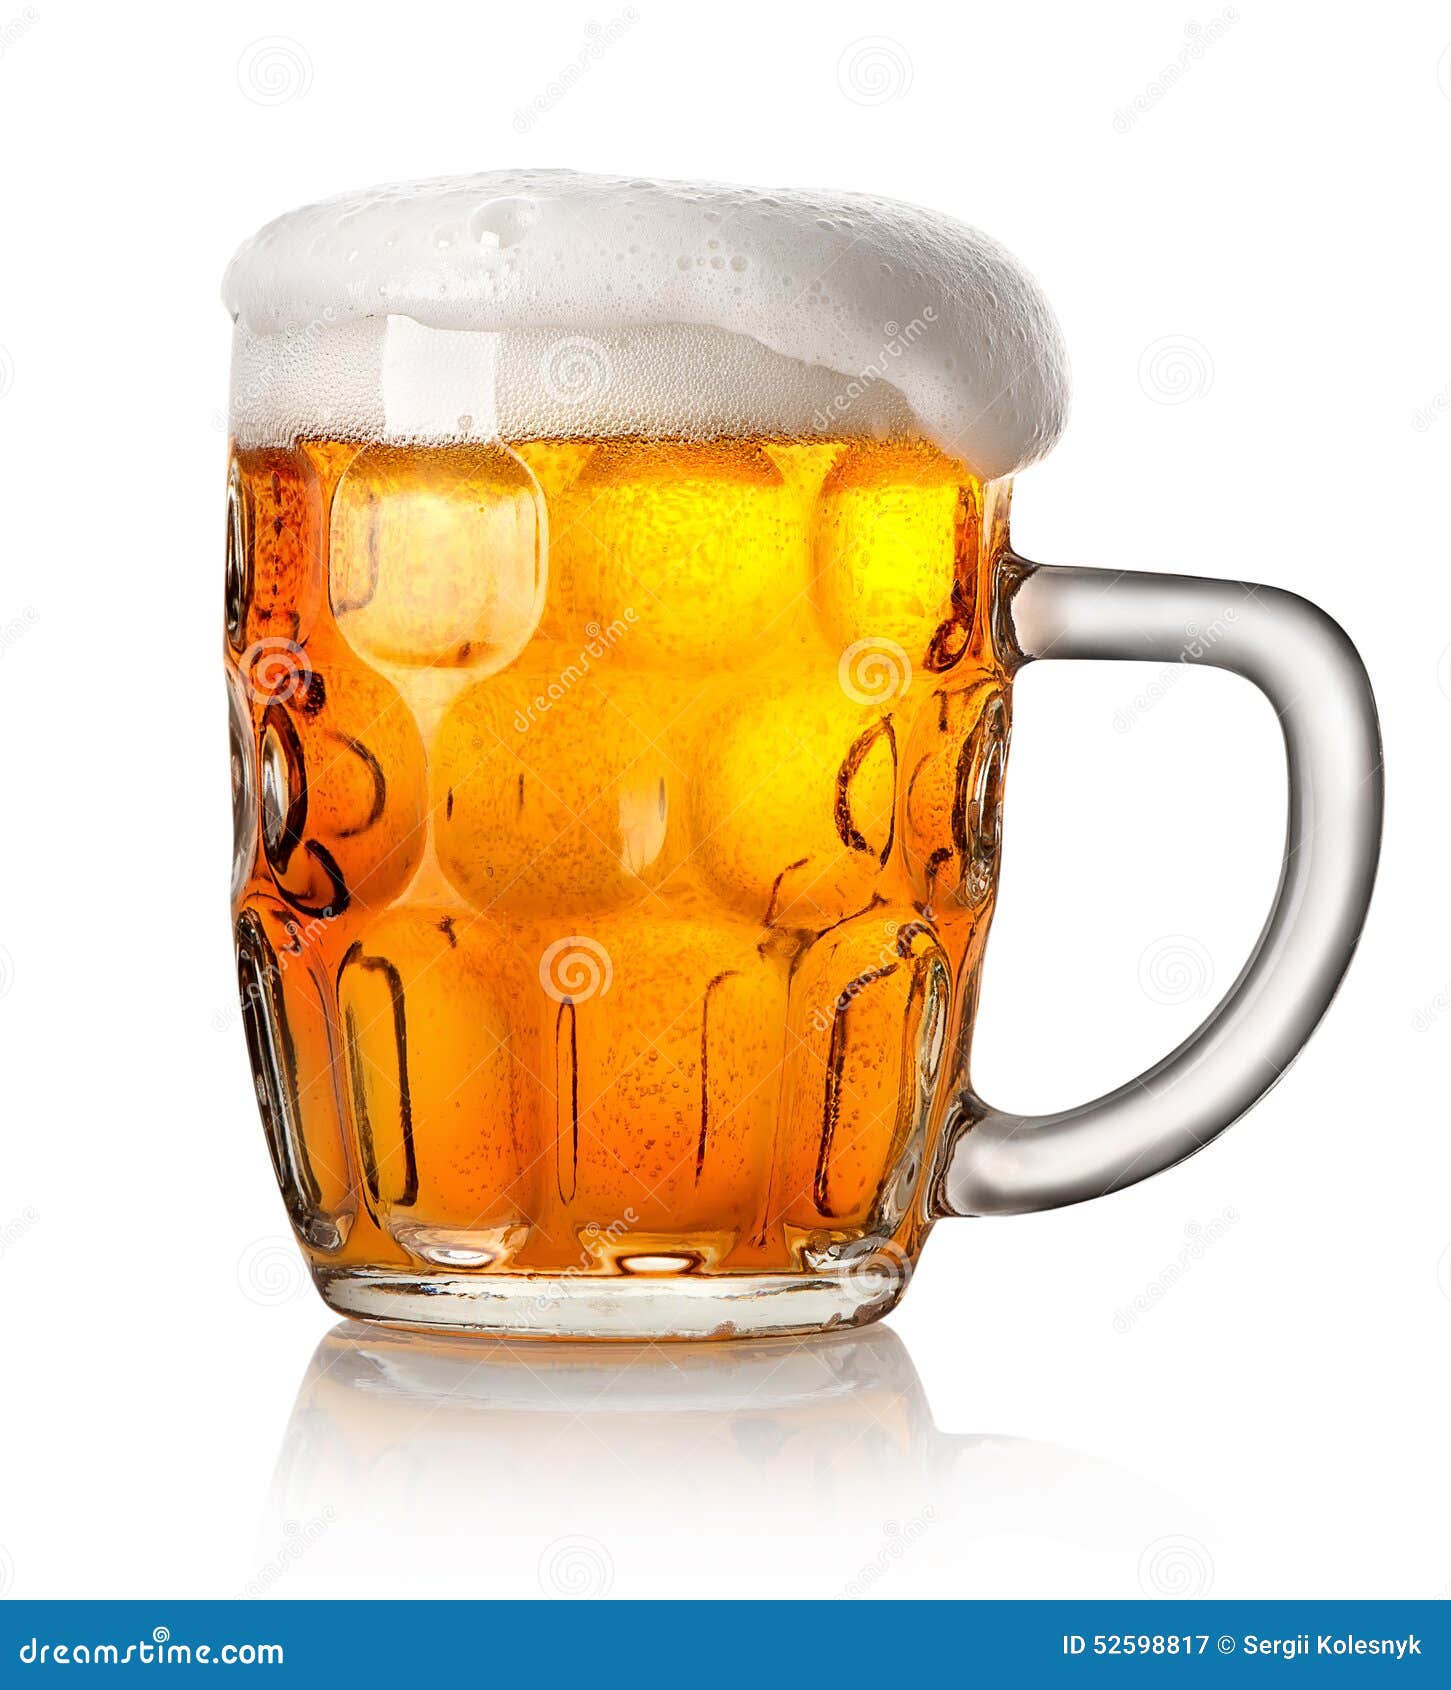 一群人在啤酒厂酒吧享受和举杯庆祝啤酒-友谊的概念与年轻人一起玩照片摄影图片_ID:418742443-Veer图库